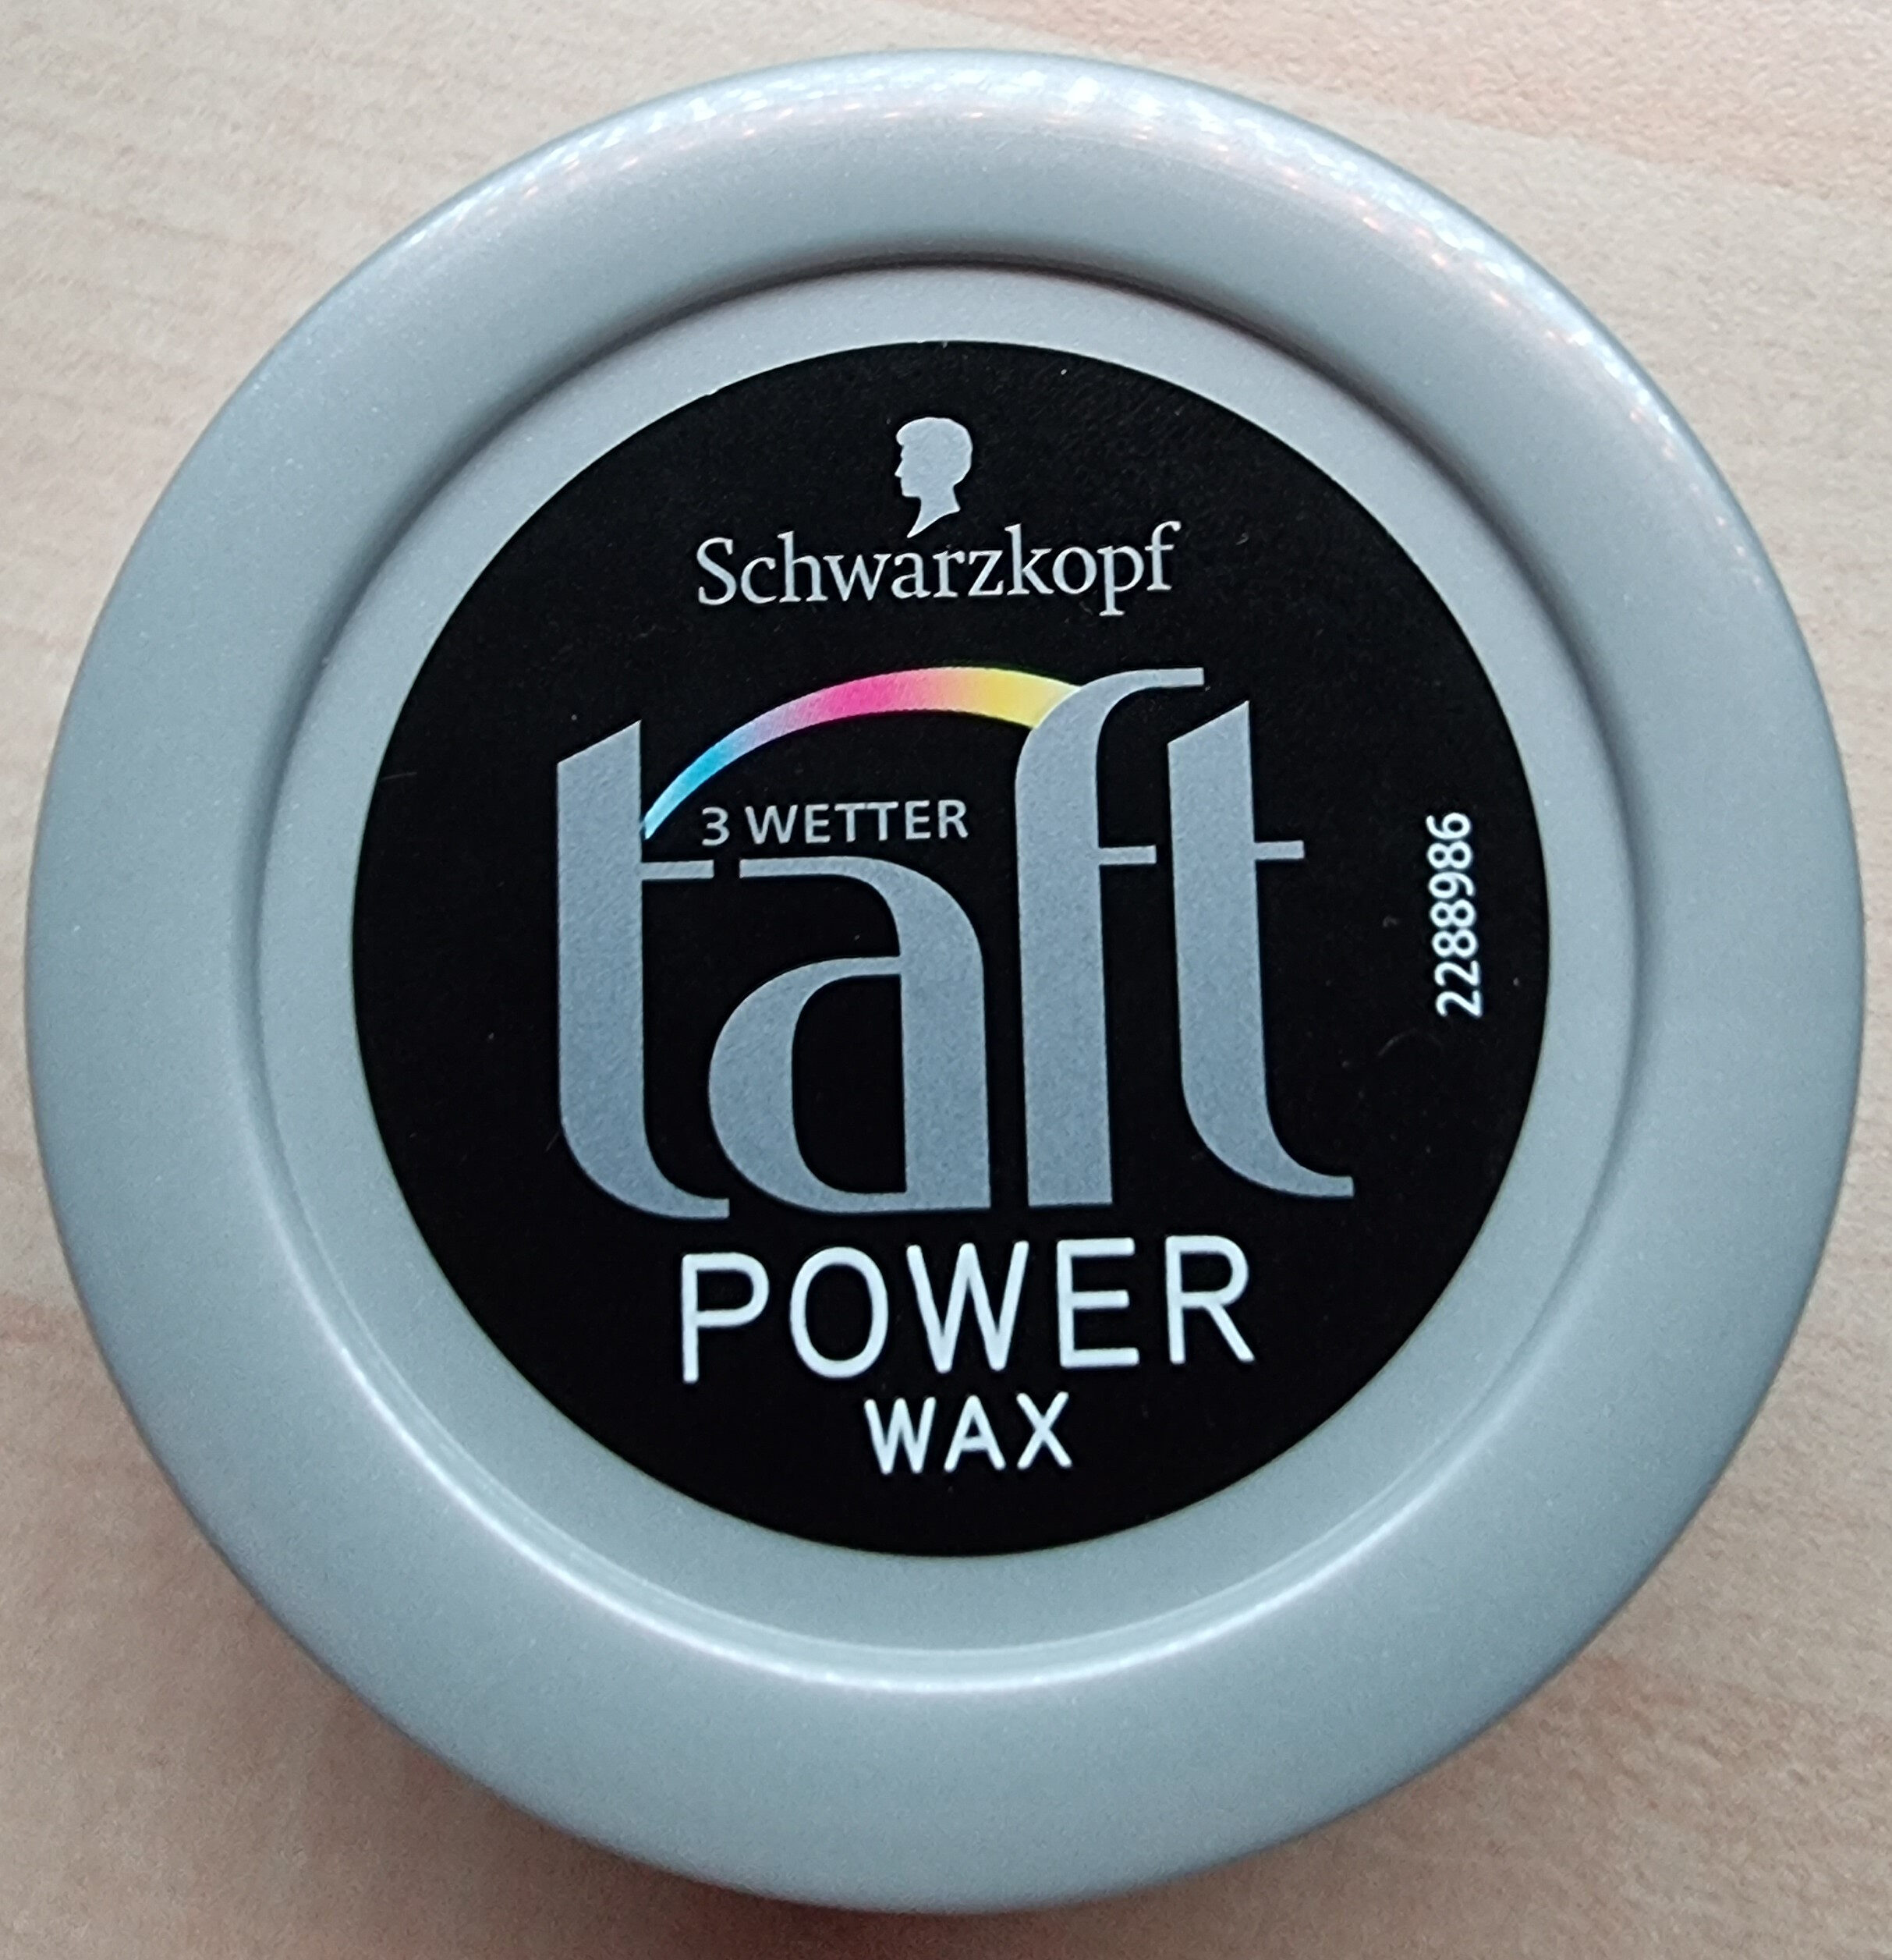 3 Wetter taft Power Wax - Produit - de